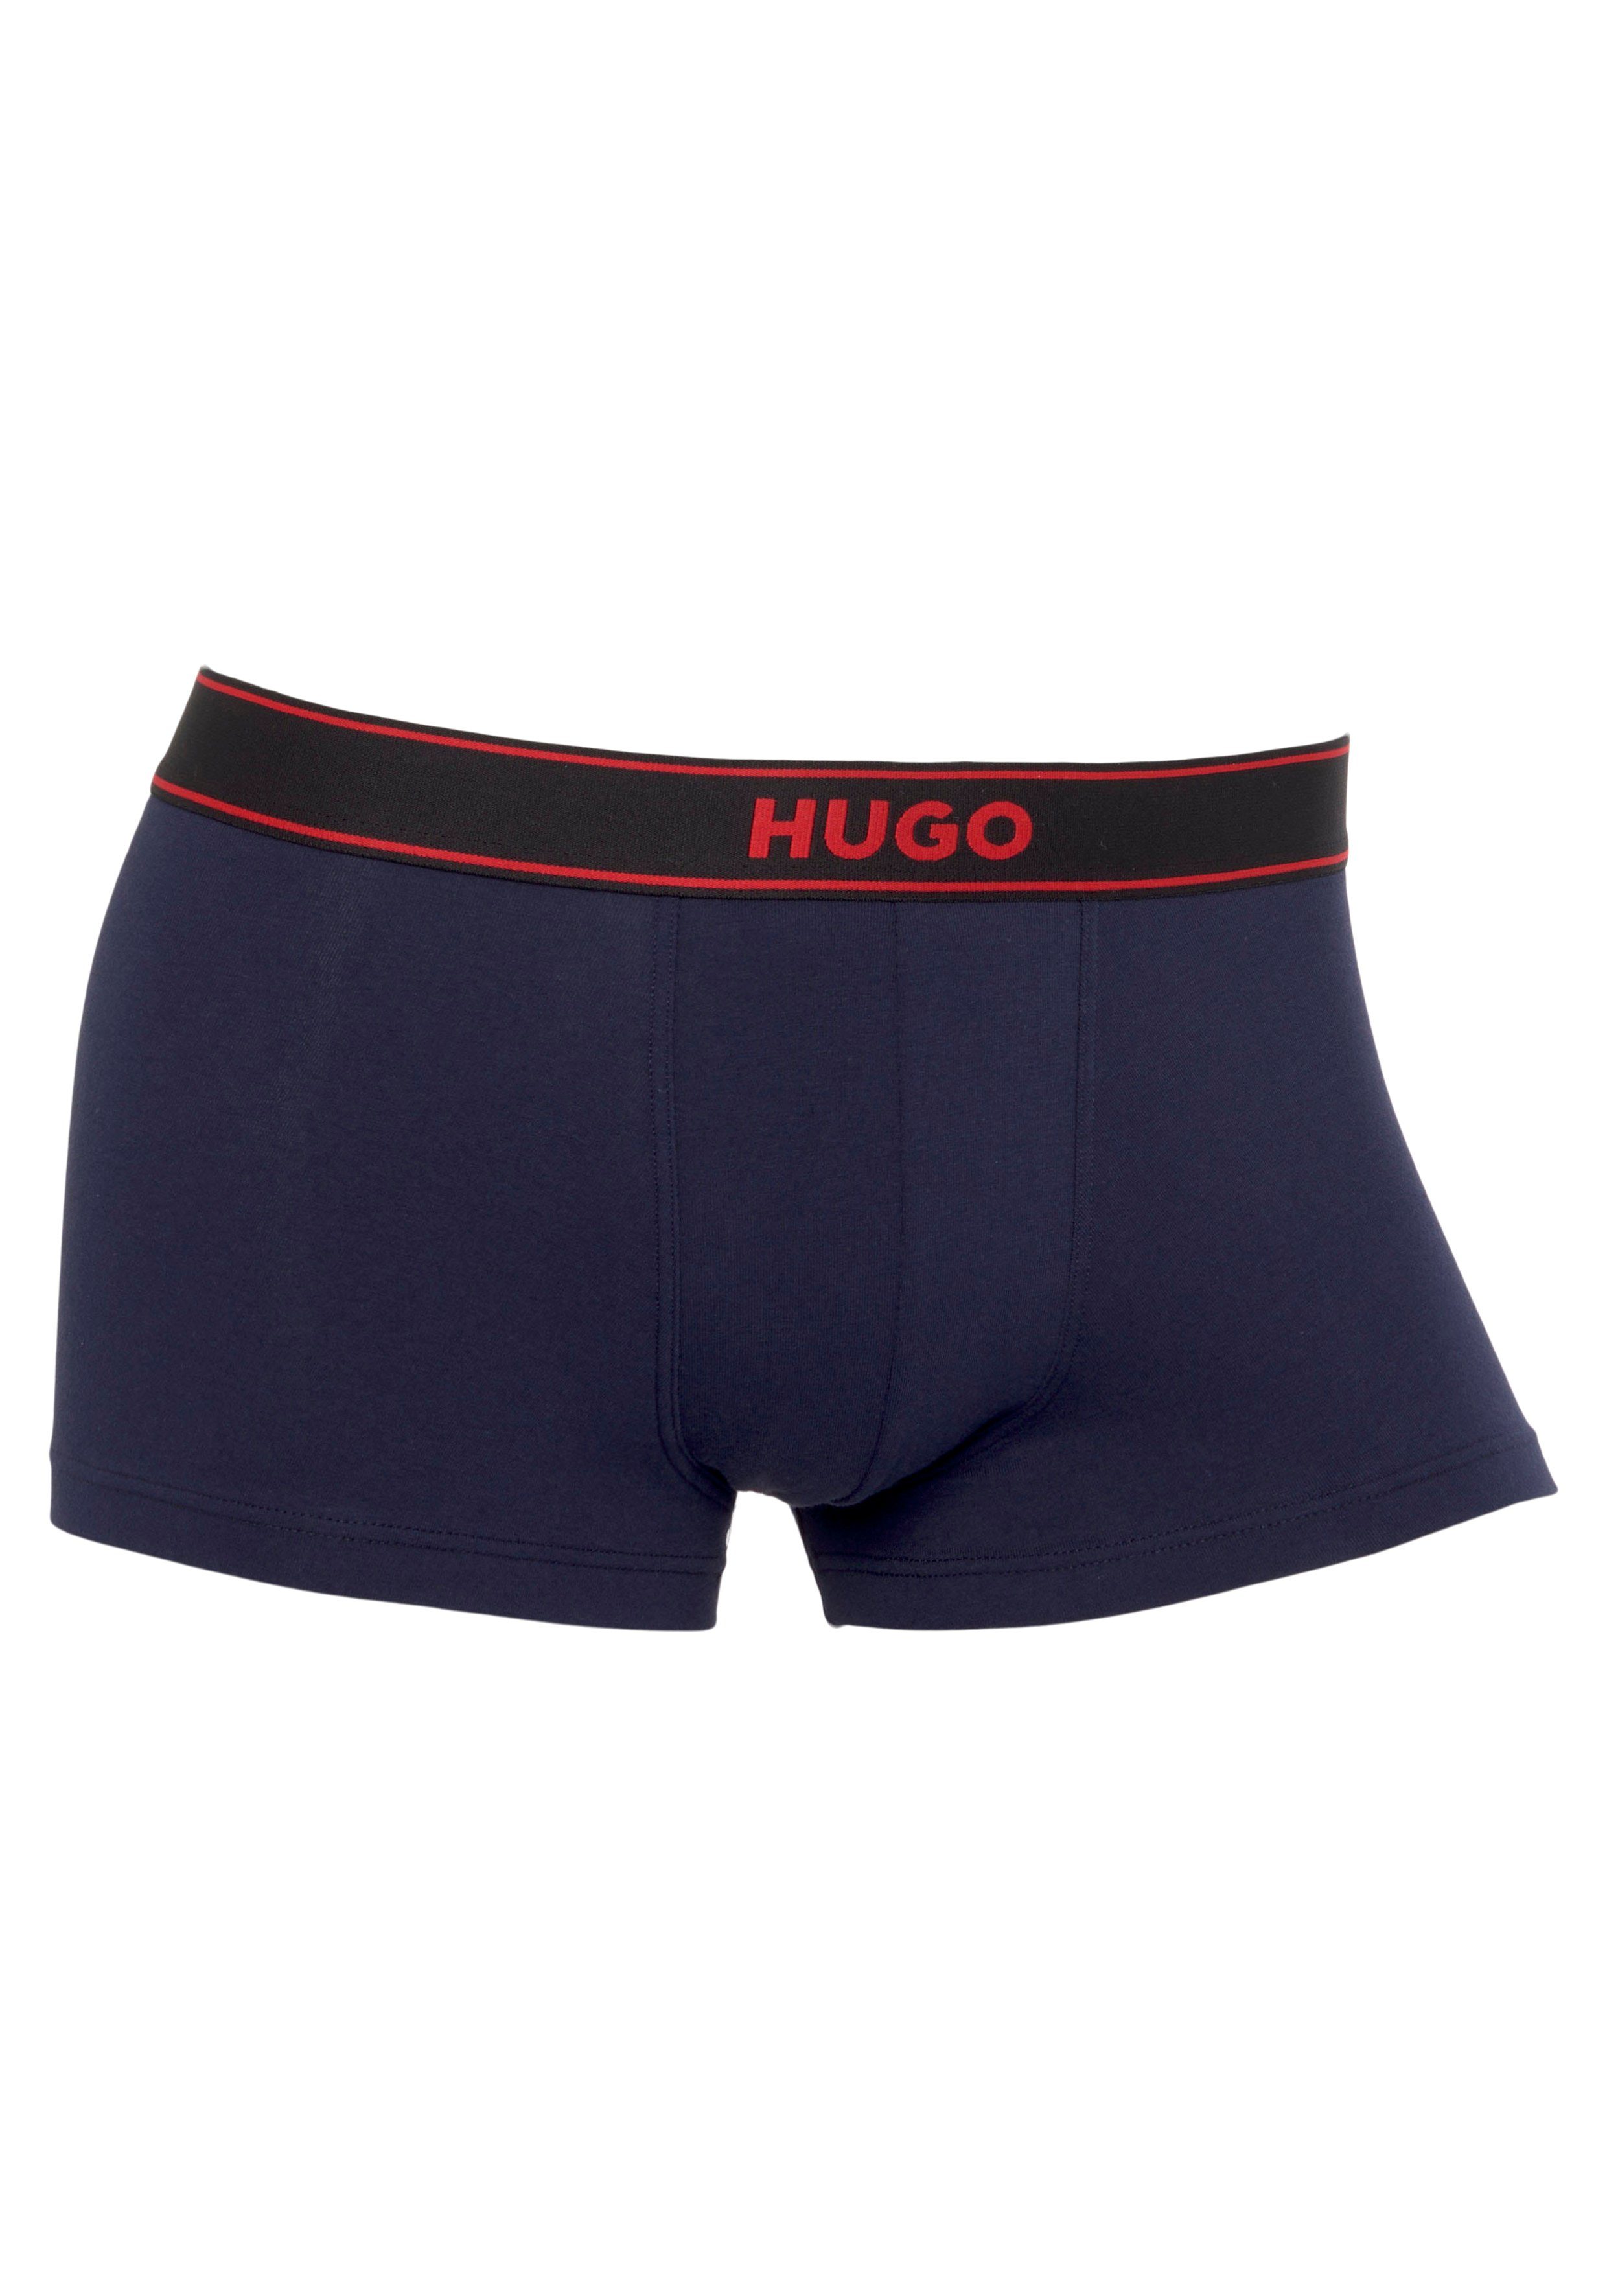 HUGO Trunk TRUNK EXCITE mit HUGO Label auf dem Bund Navy